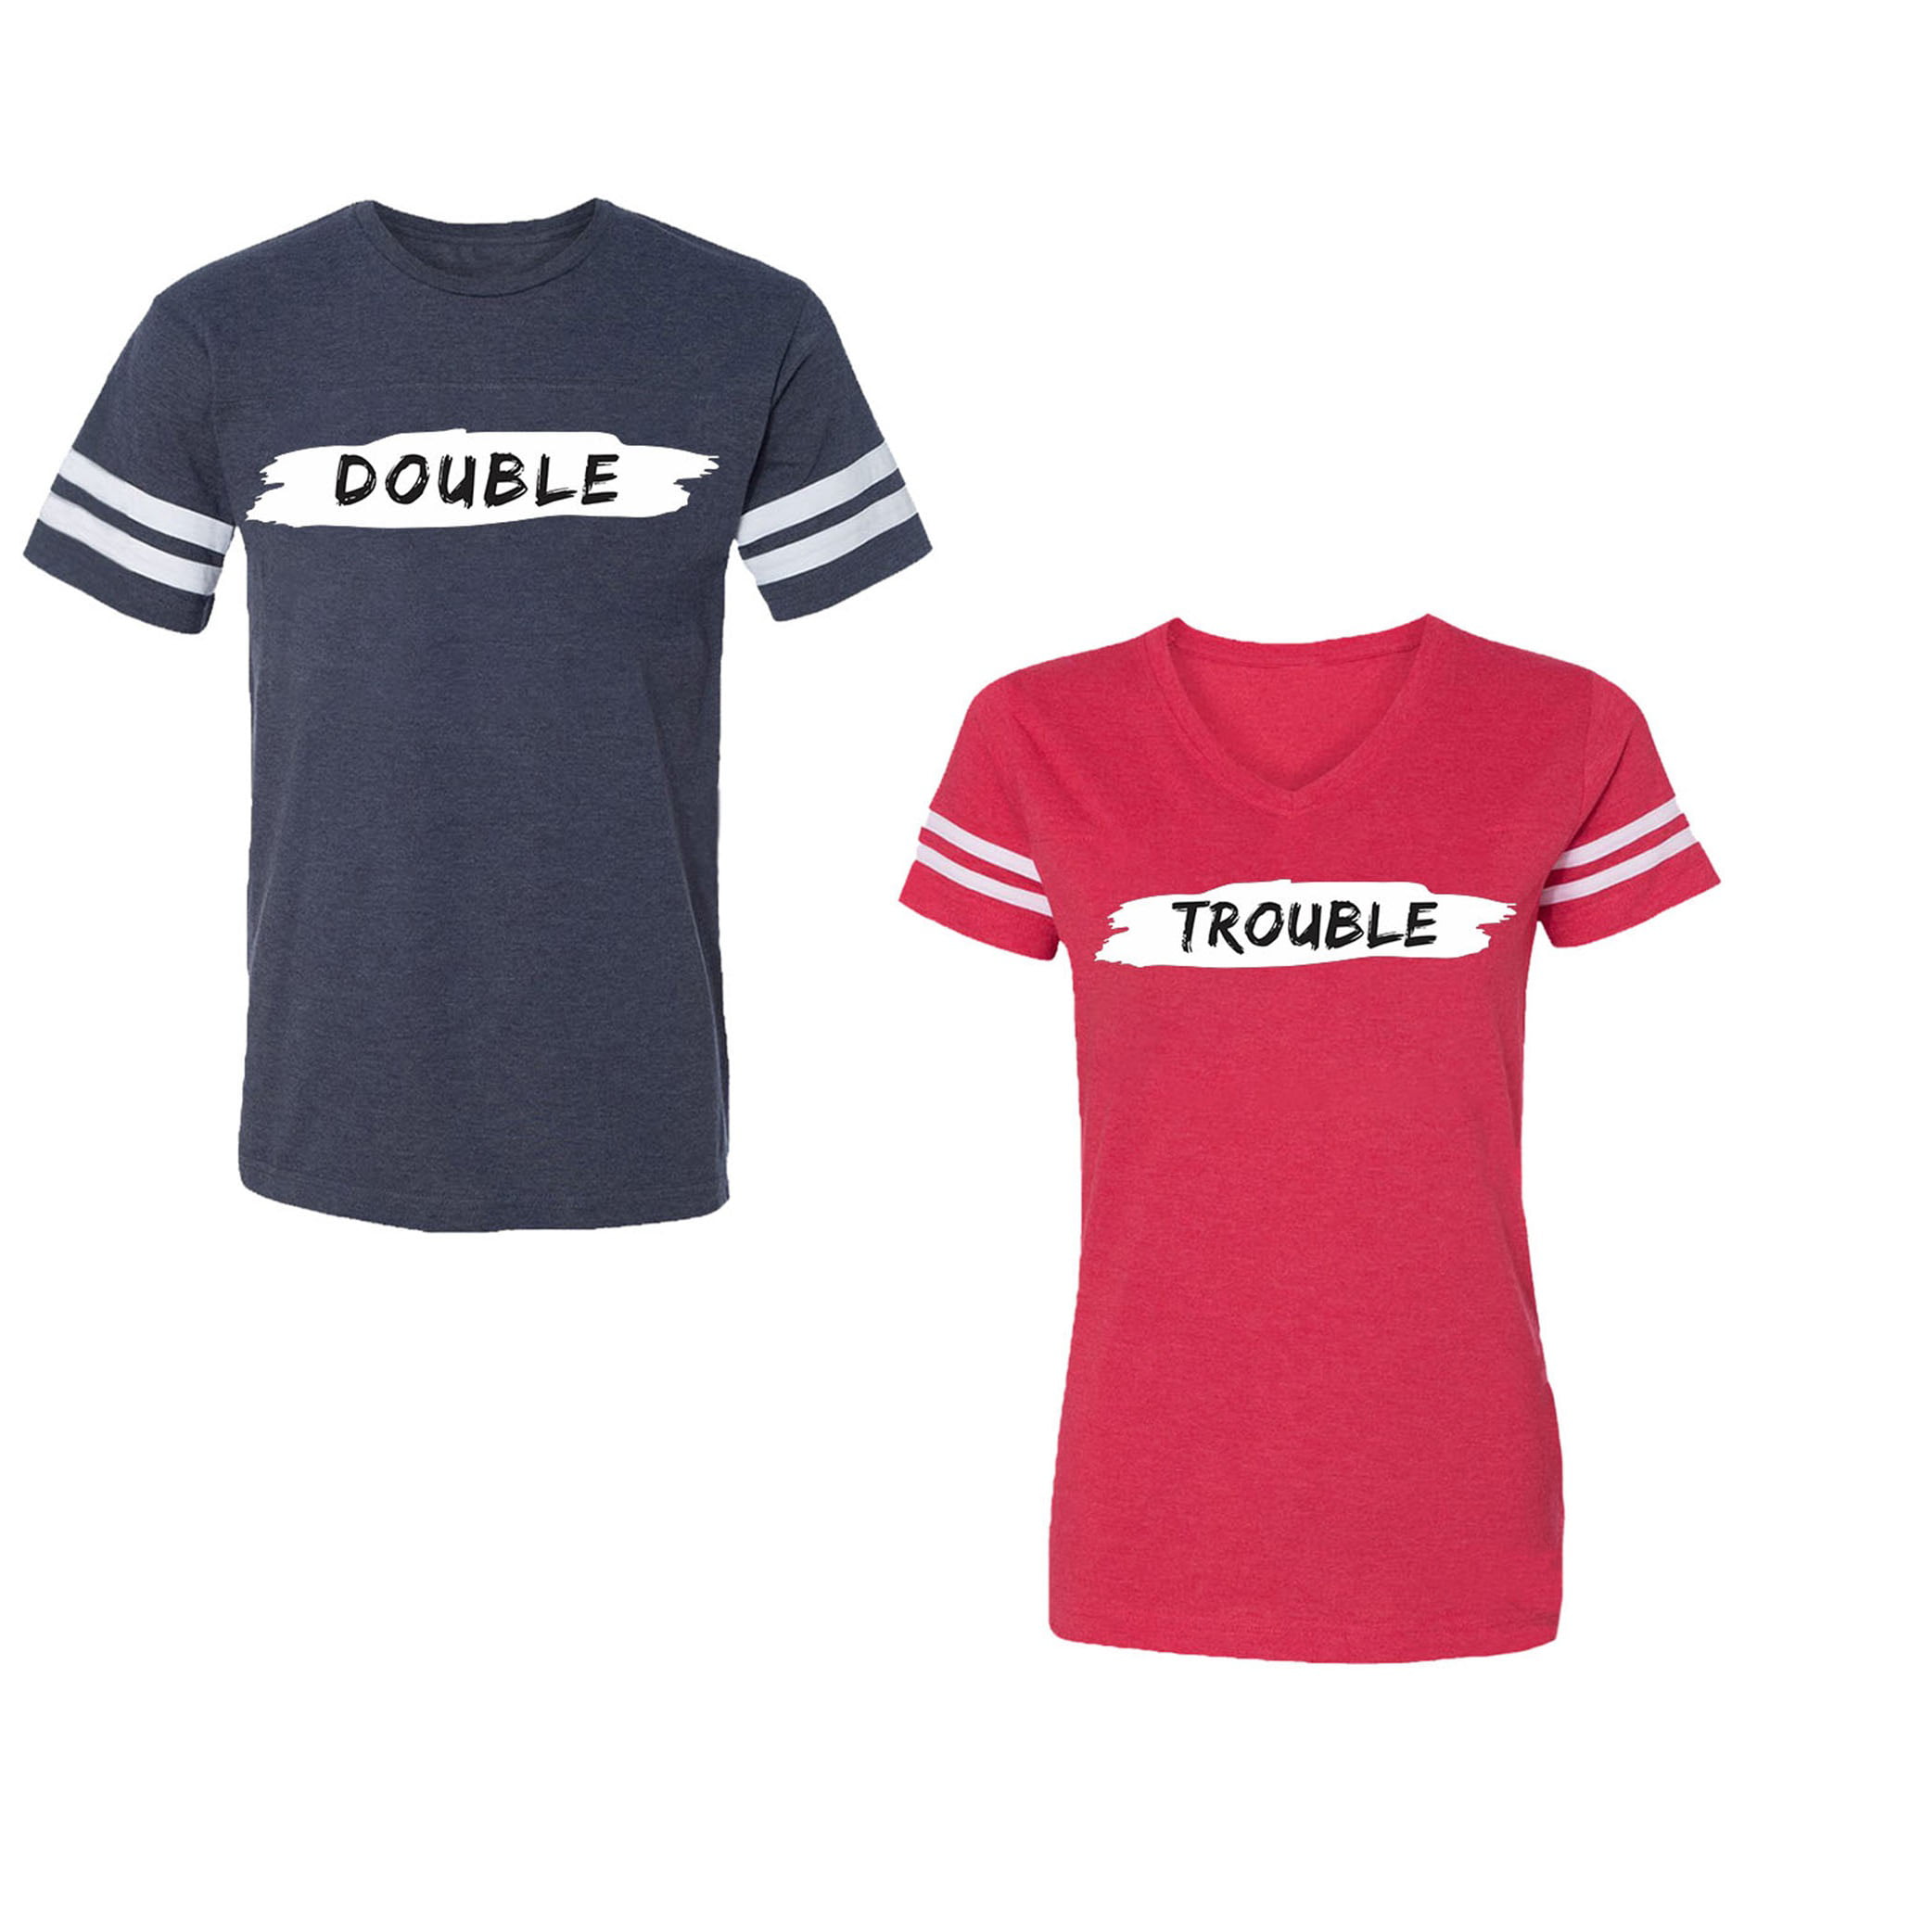 Double Trouble Couple